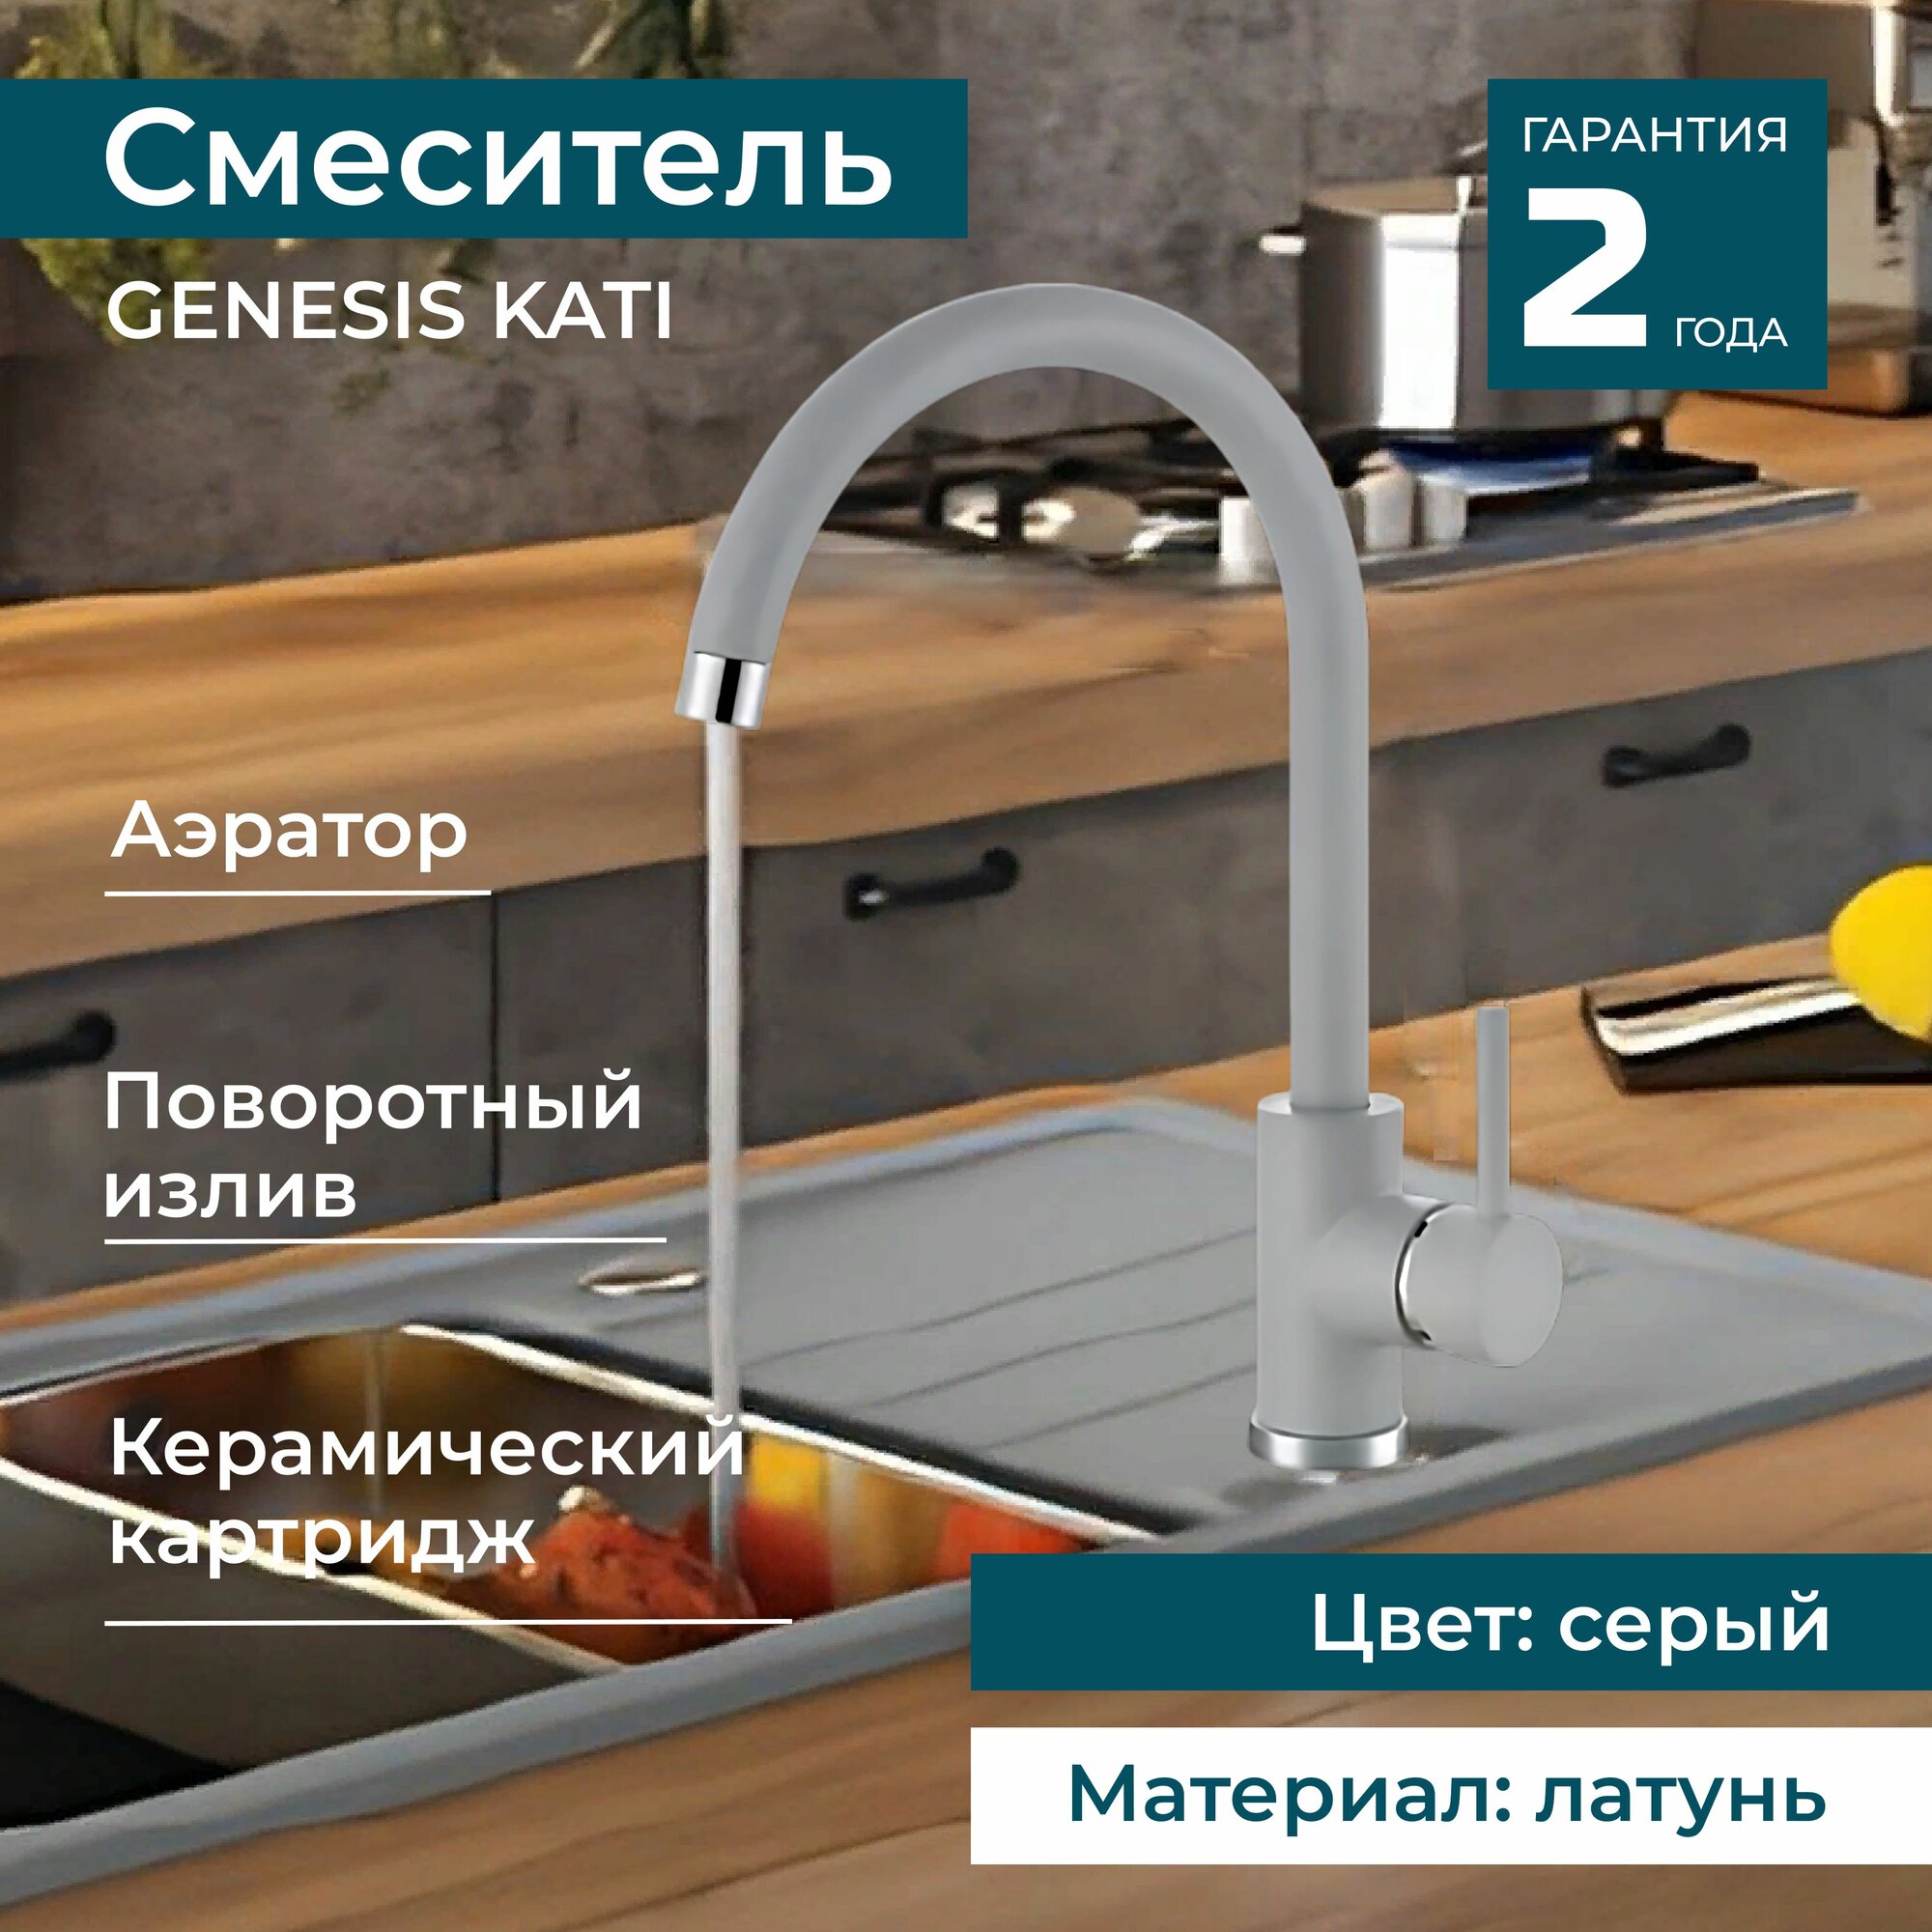 Смеситель для раковины, мойки поворотный ALVEUS GENESIS KATI G81 CONCRETE на кухню, в ванную. Цвет серый